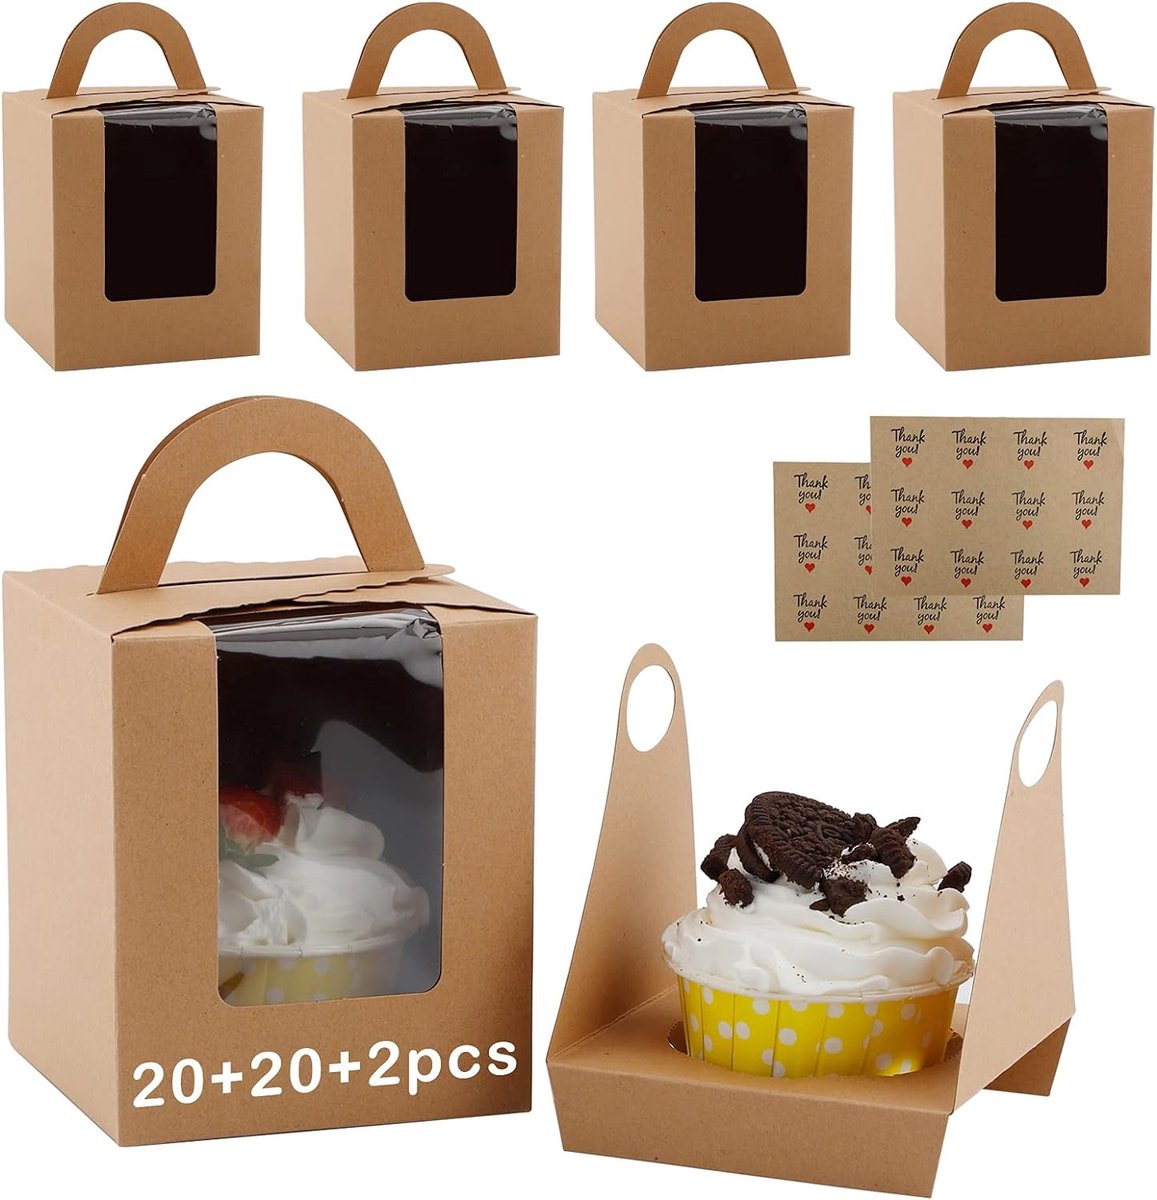 20 stuks Enkele Cupcake Dozen Cupcake-Geschenkdozen met Venster met 2 stuks Bedankt sticker voor cupcakes, koekjes, desserts (9,5x9,5x11cm)